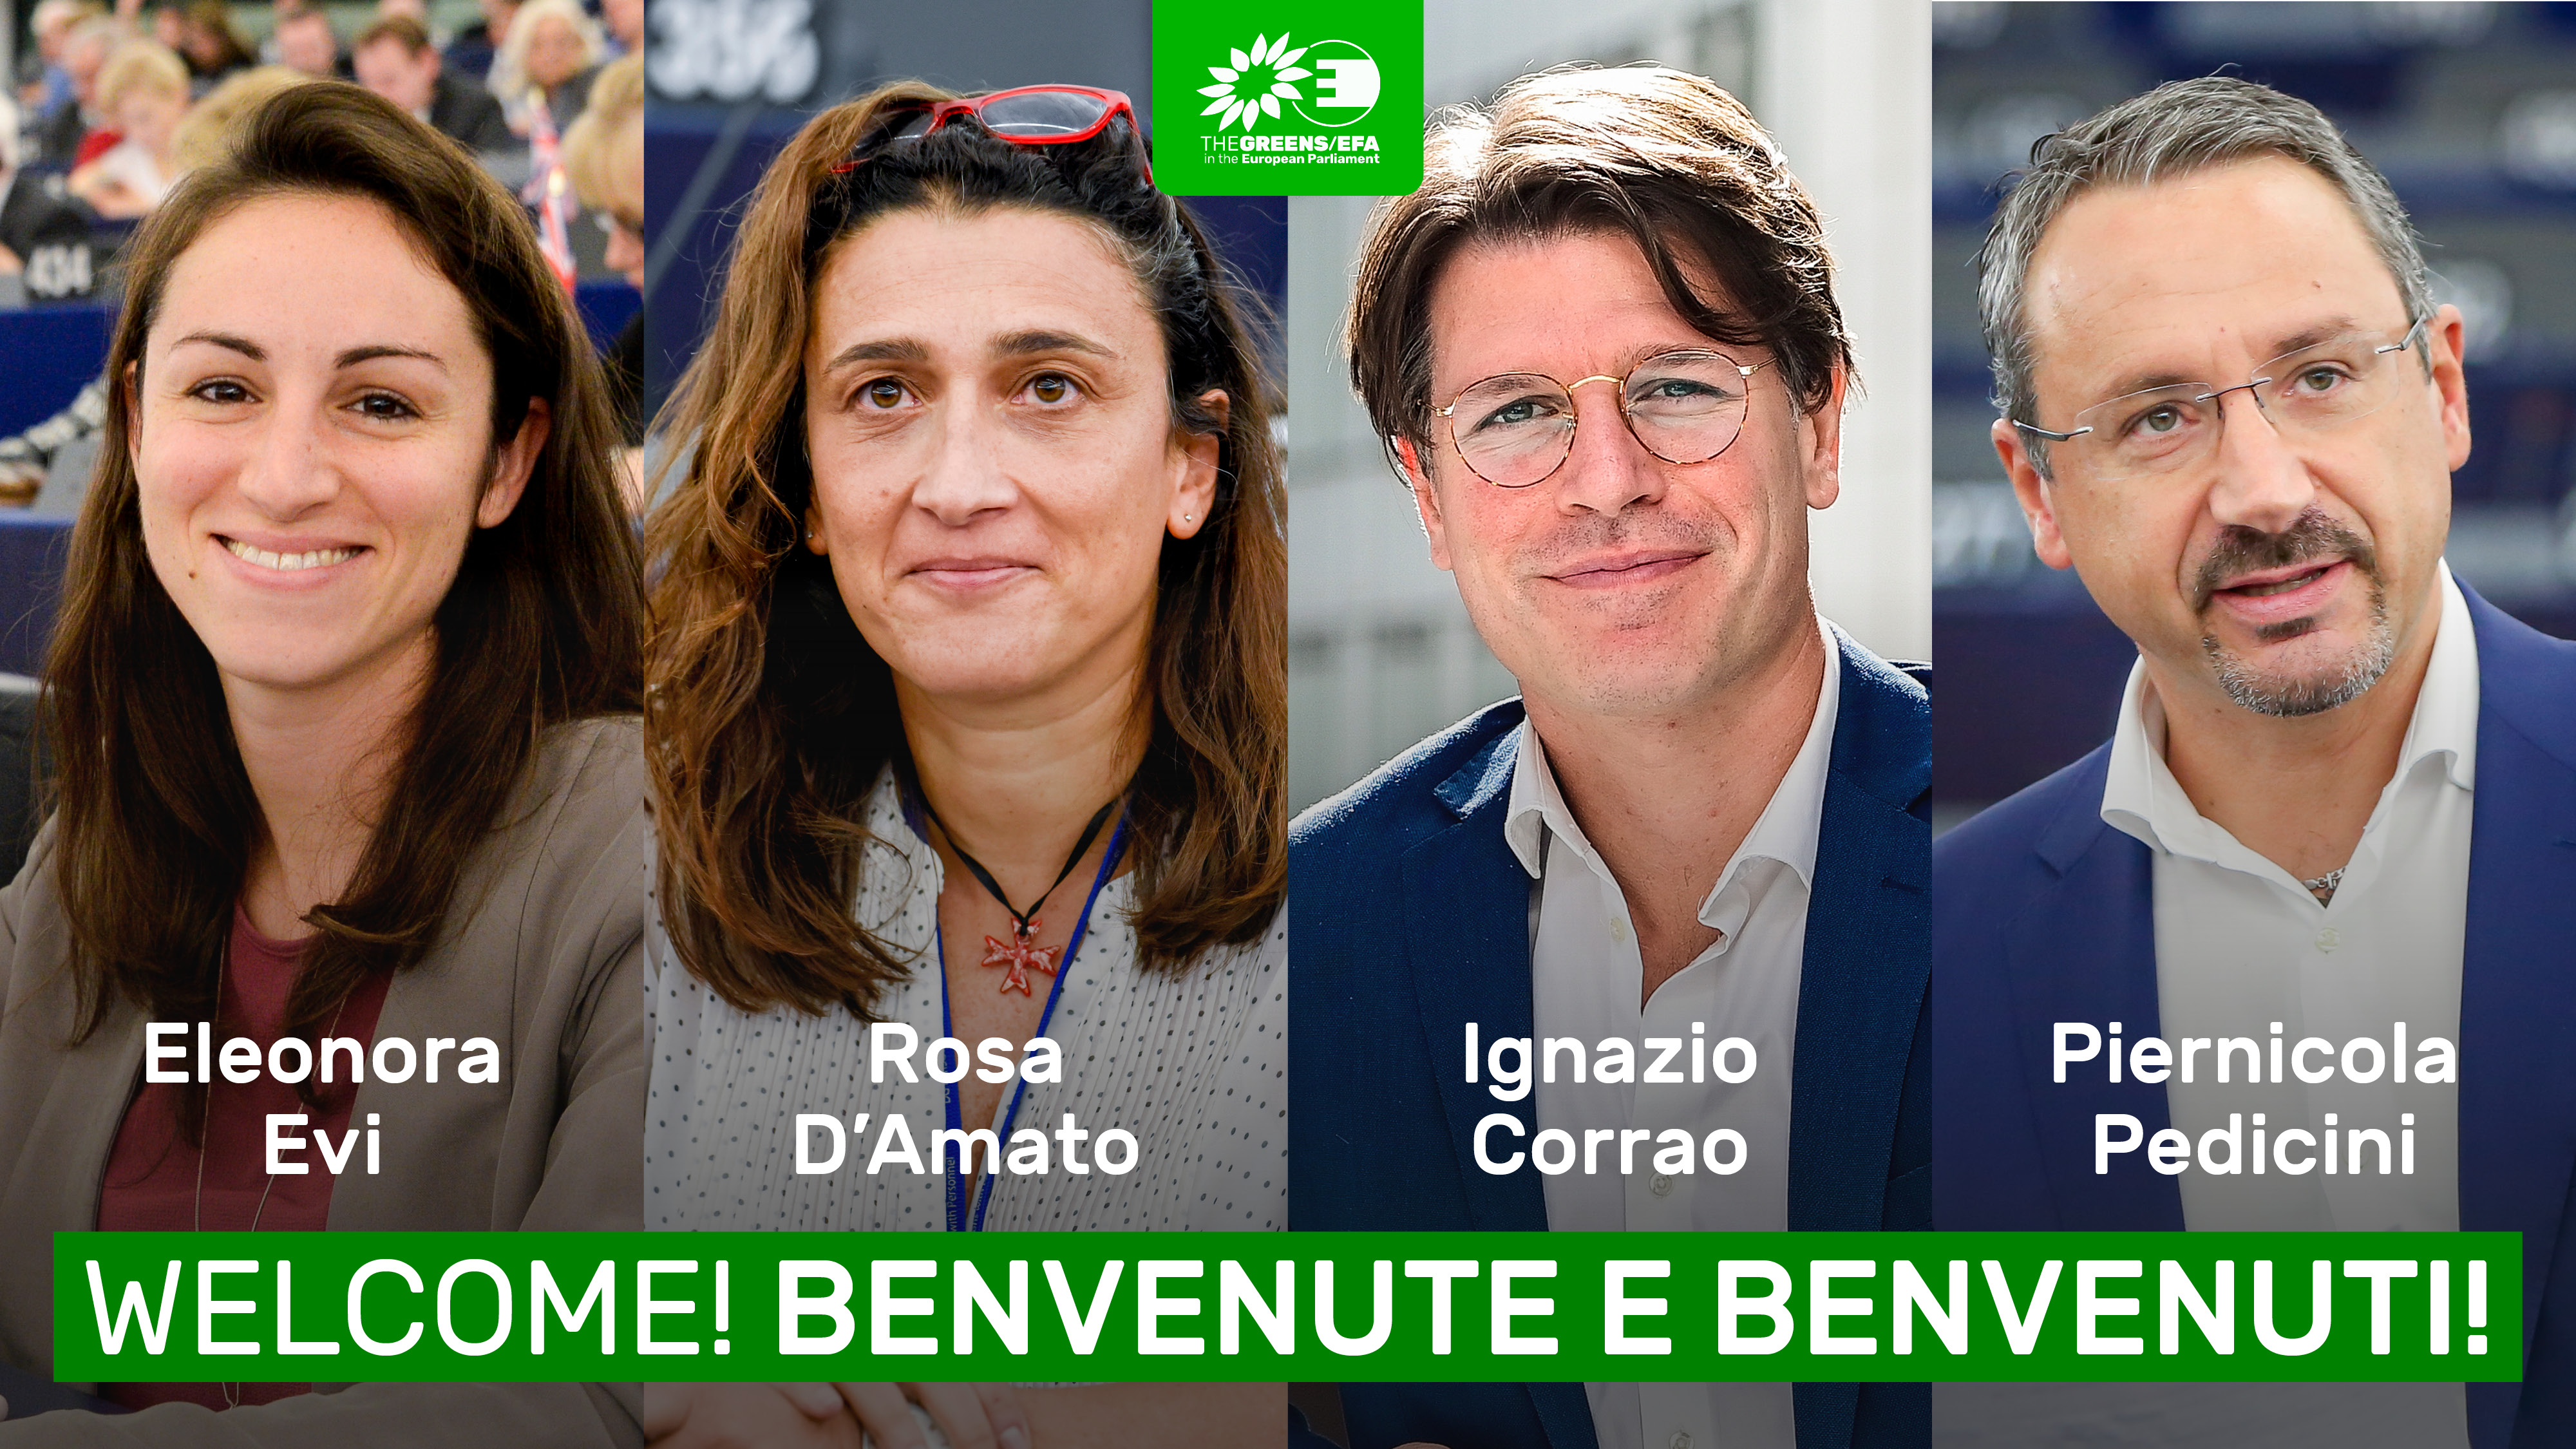 Grupo dos Verdes/ALE dá as boas-vindas a quatro deputados italianos